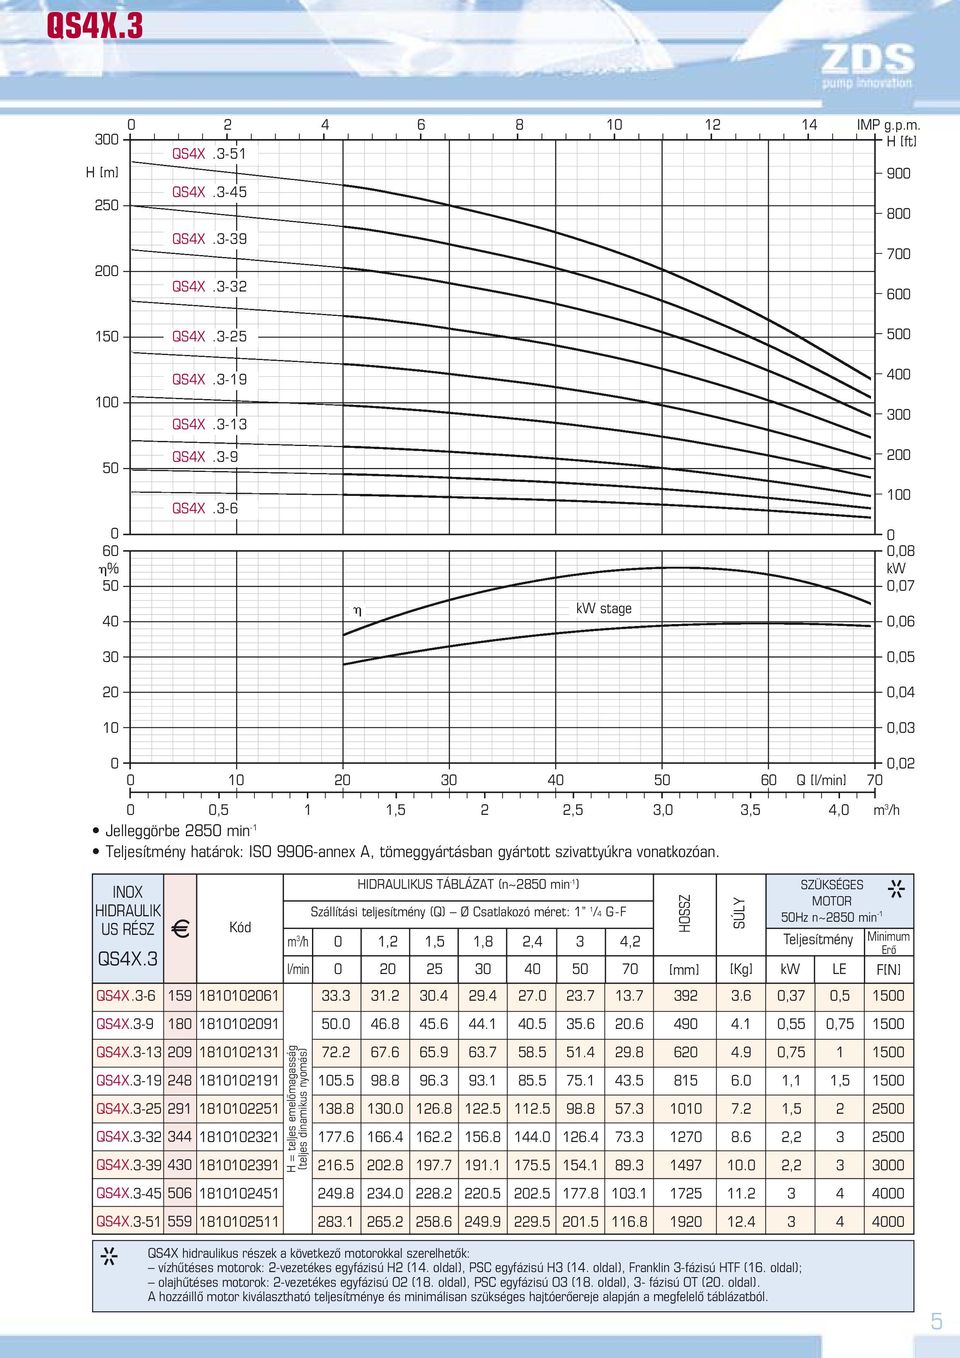 -6 1 6 % 5 kw stage,8 kw,7,6,5, 1,, 1 5 6 Q [l/min] 7,5 1,5,,5, m /h Jelleggörbe 85 min -1 Teljesítmény határok: ISO 996-annex A, tömeggyártásban gyártott szivattyúkra vonatkozóan.